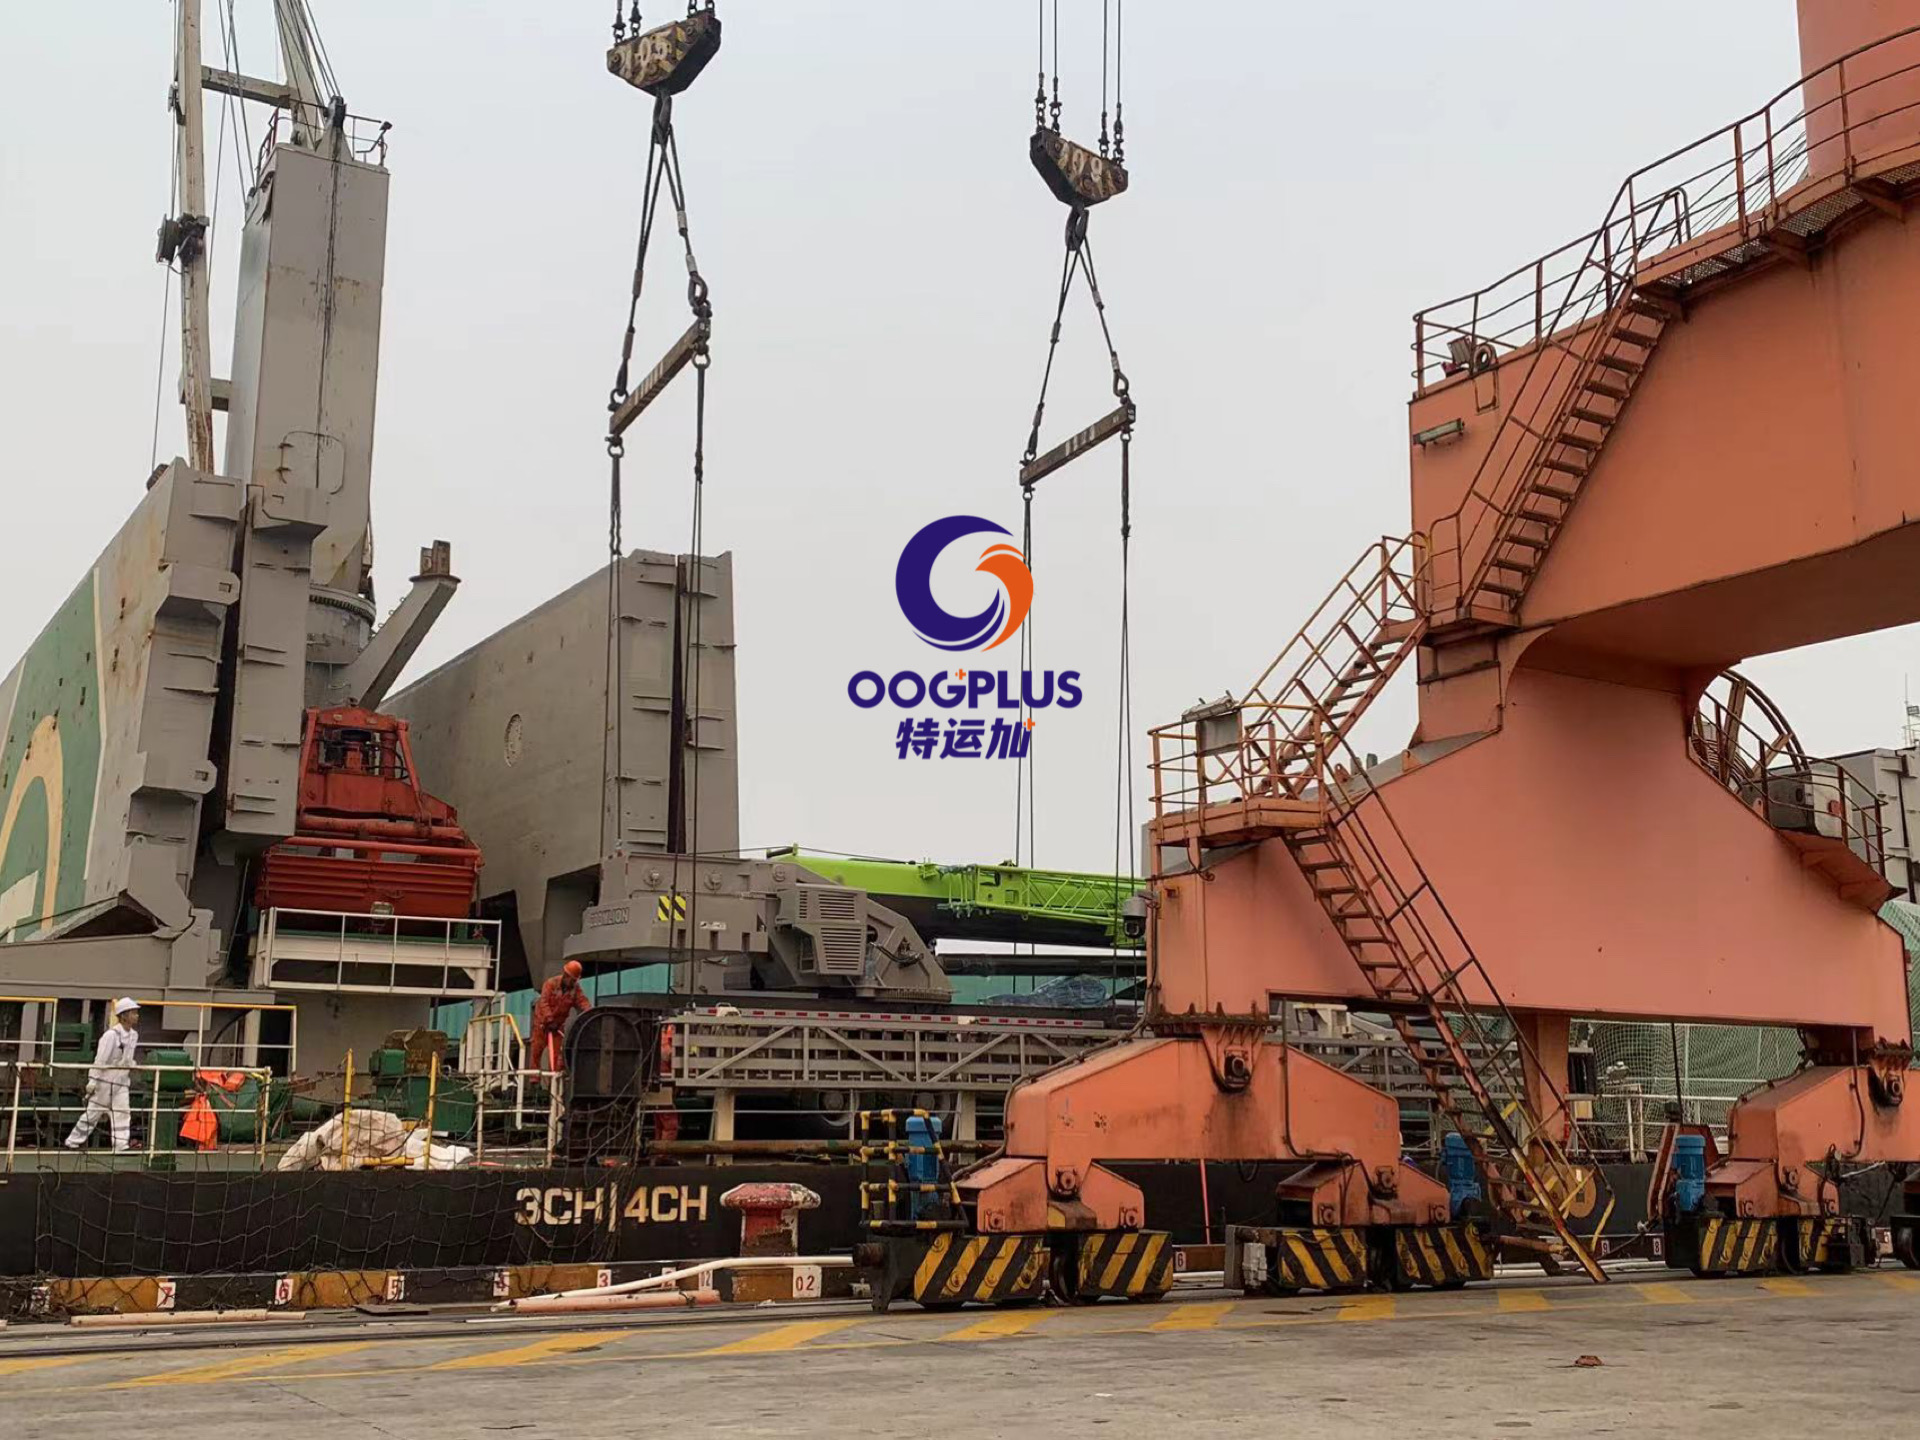 Shanghai CHN to Constanza Rou 4pcs завсарлага бөөн ачааны олон улсын тээвэрлэлт